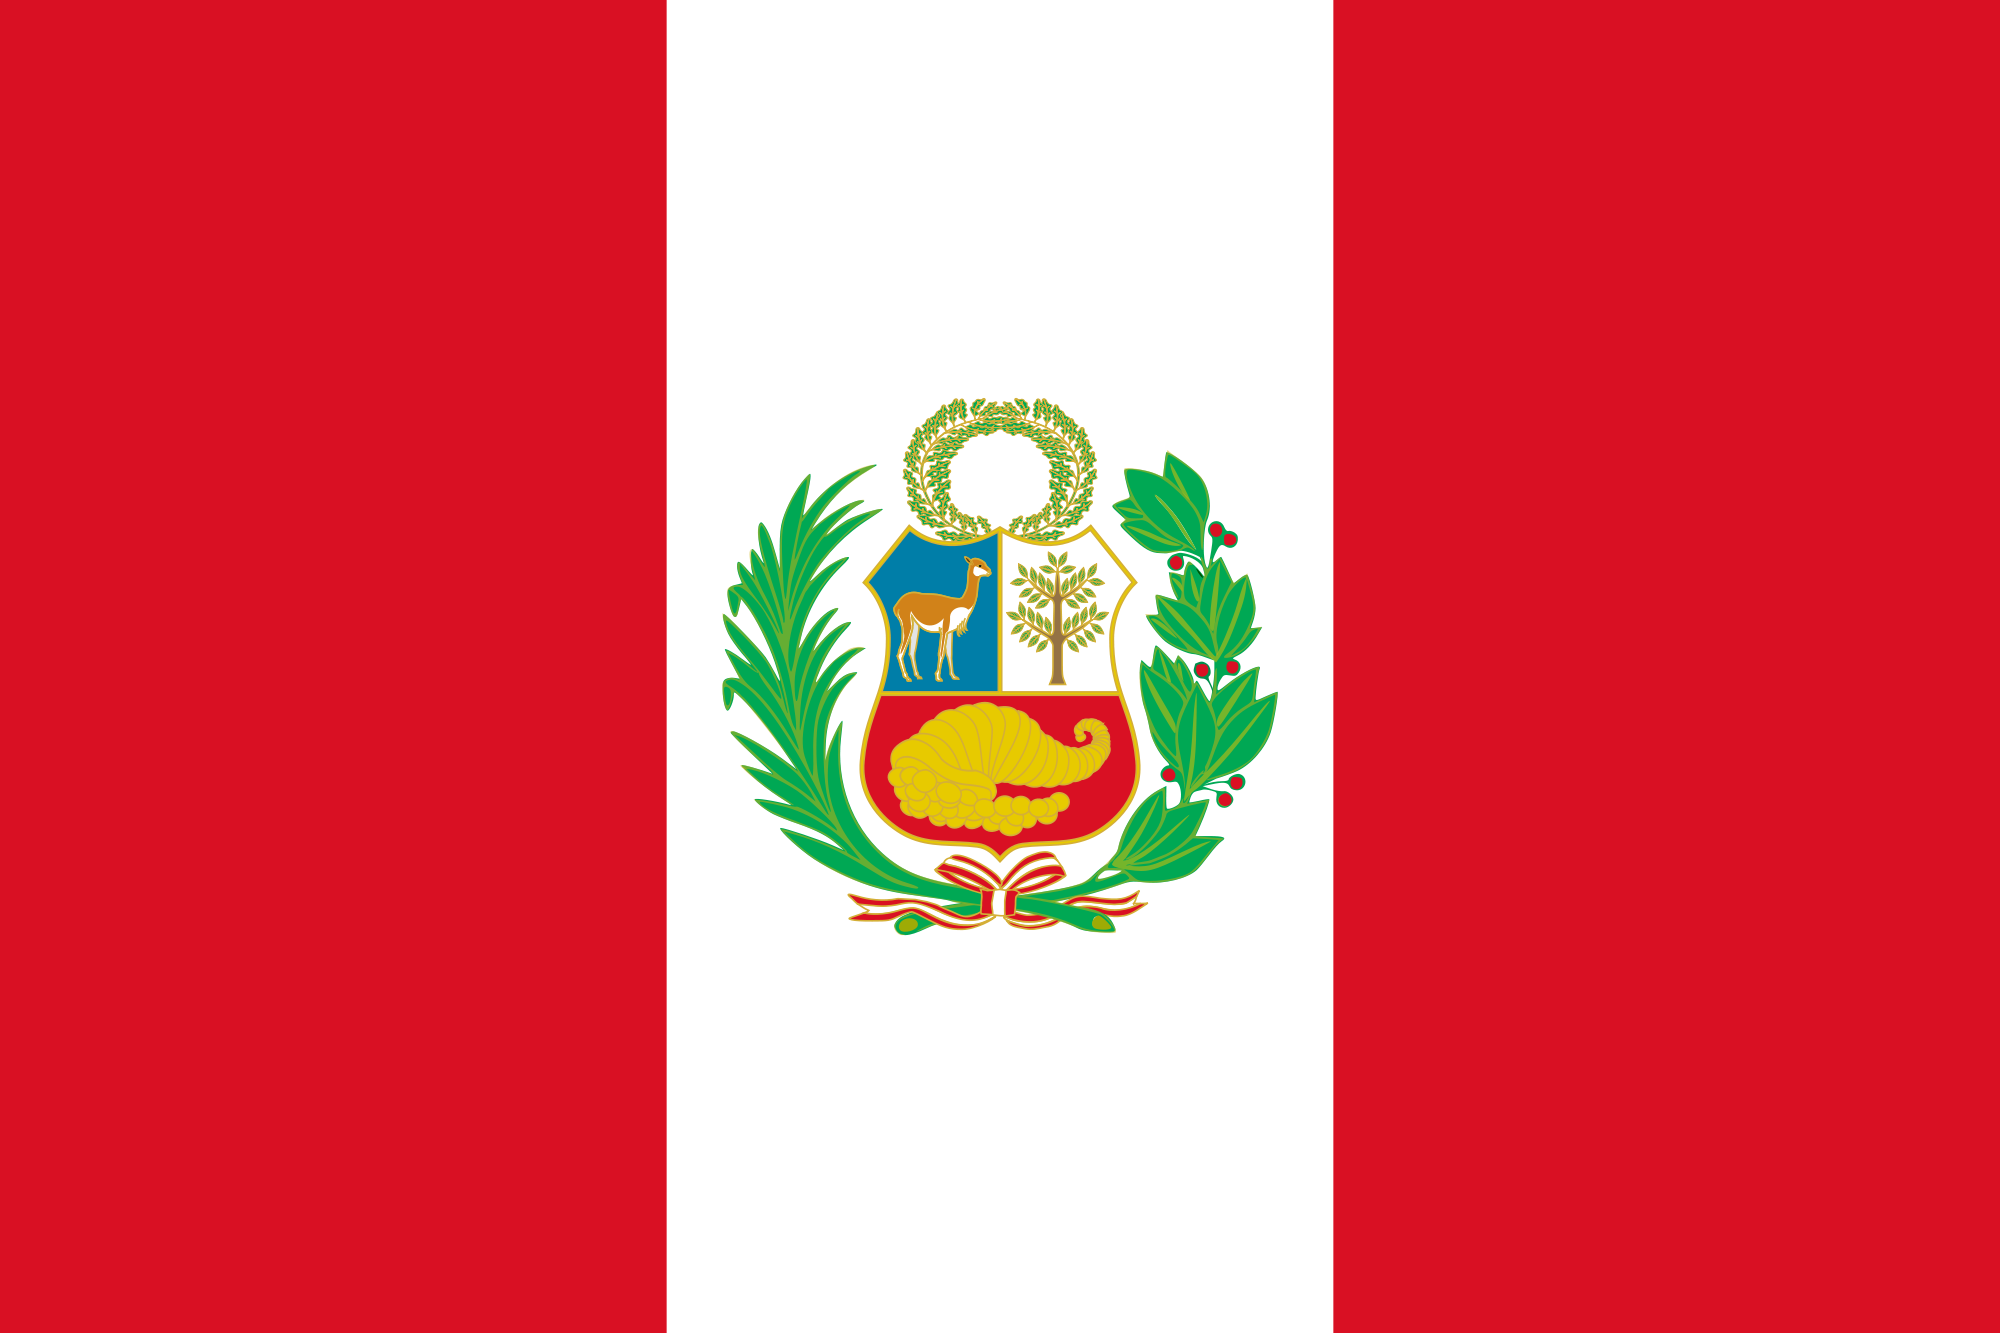 Peru_flag